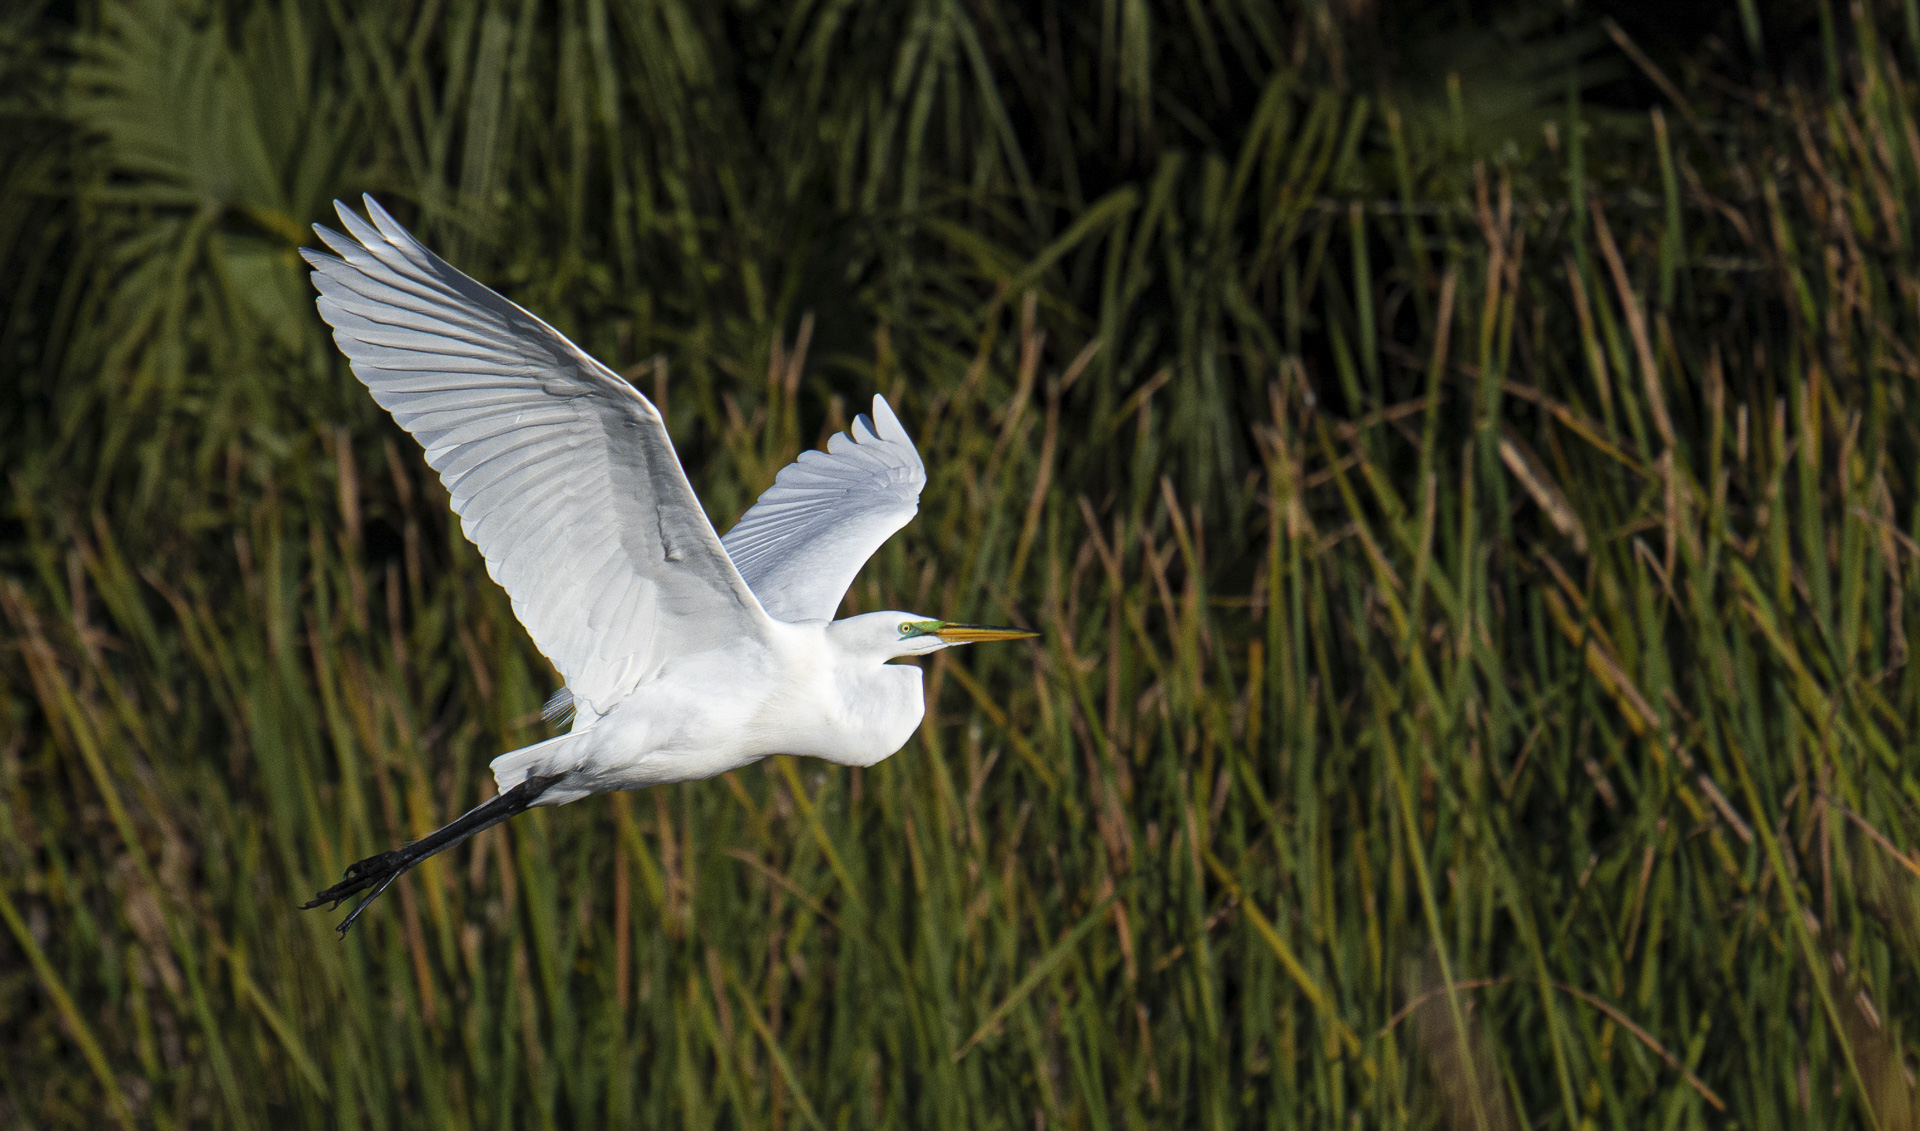 Great Egret in Flight by Peter Dominowski